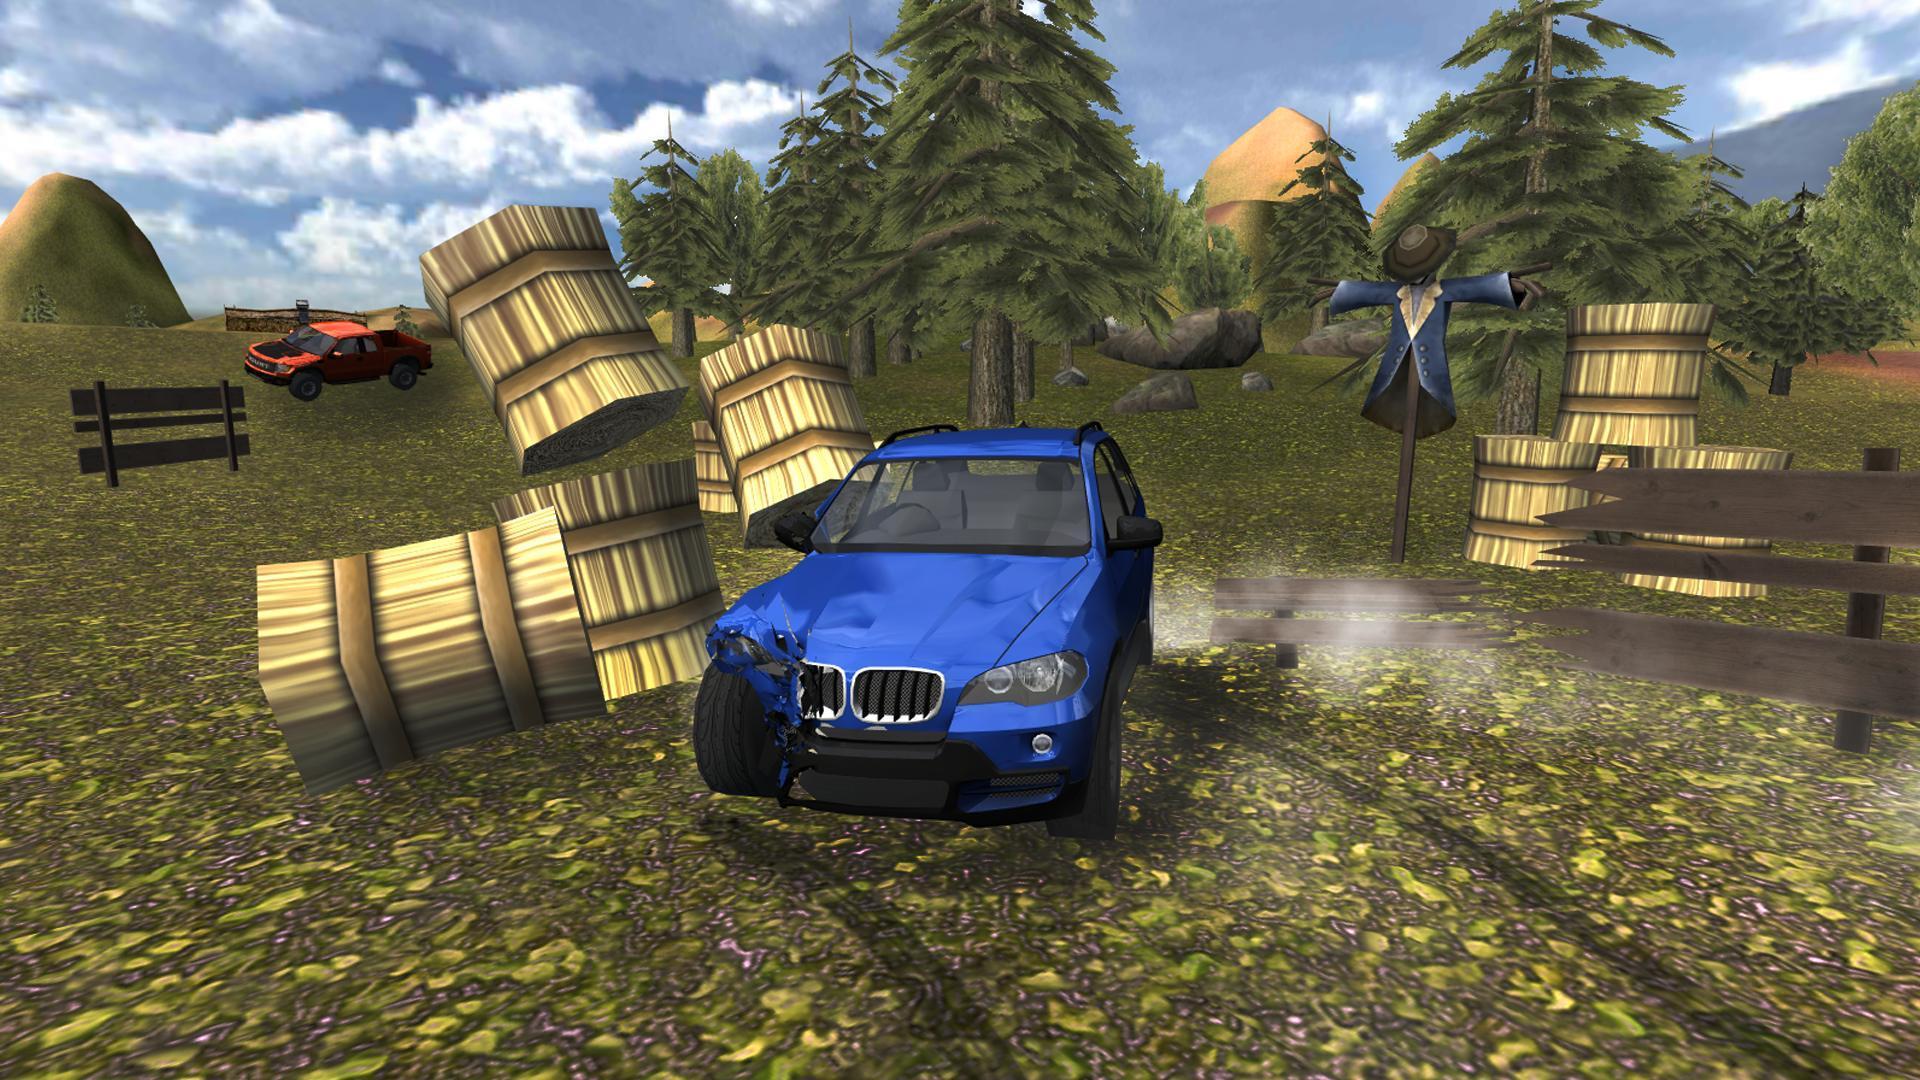 Симулятор машины с открытым миром. Extreme SUV Driving Simulator 1.1. SUV 4x4 симулятор. Extreme SUV Driving Simulator 2015. Extreme SUV car Driving Simulator.